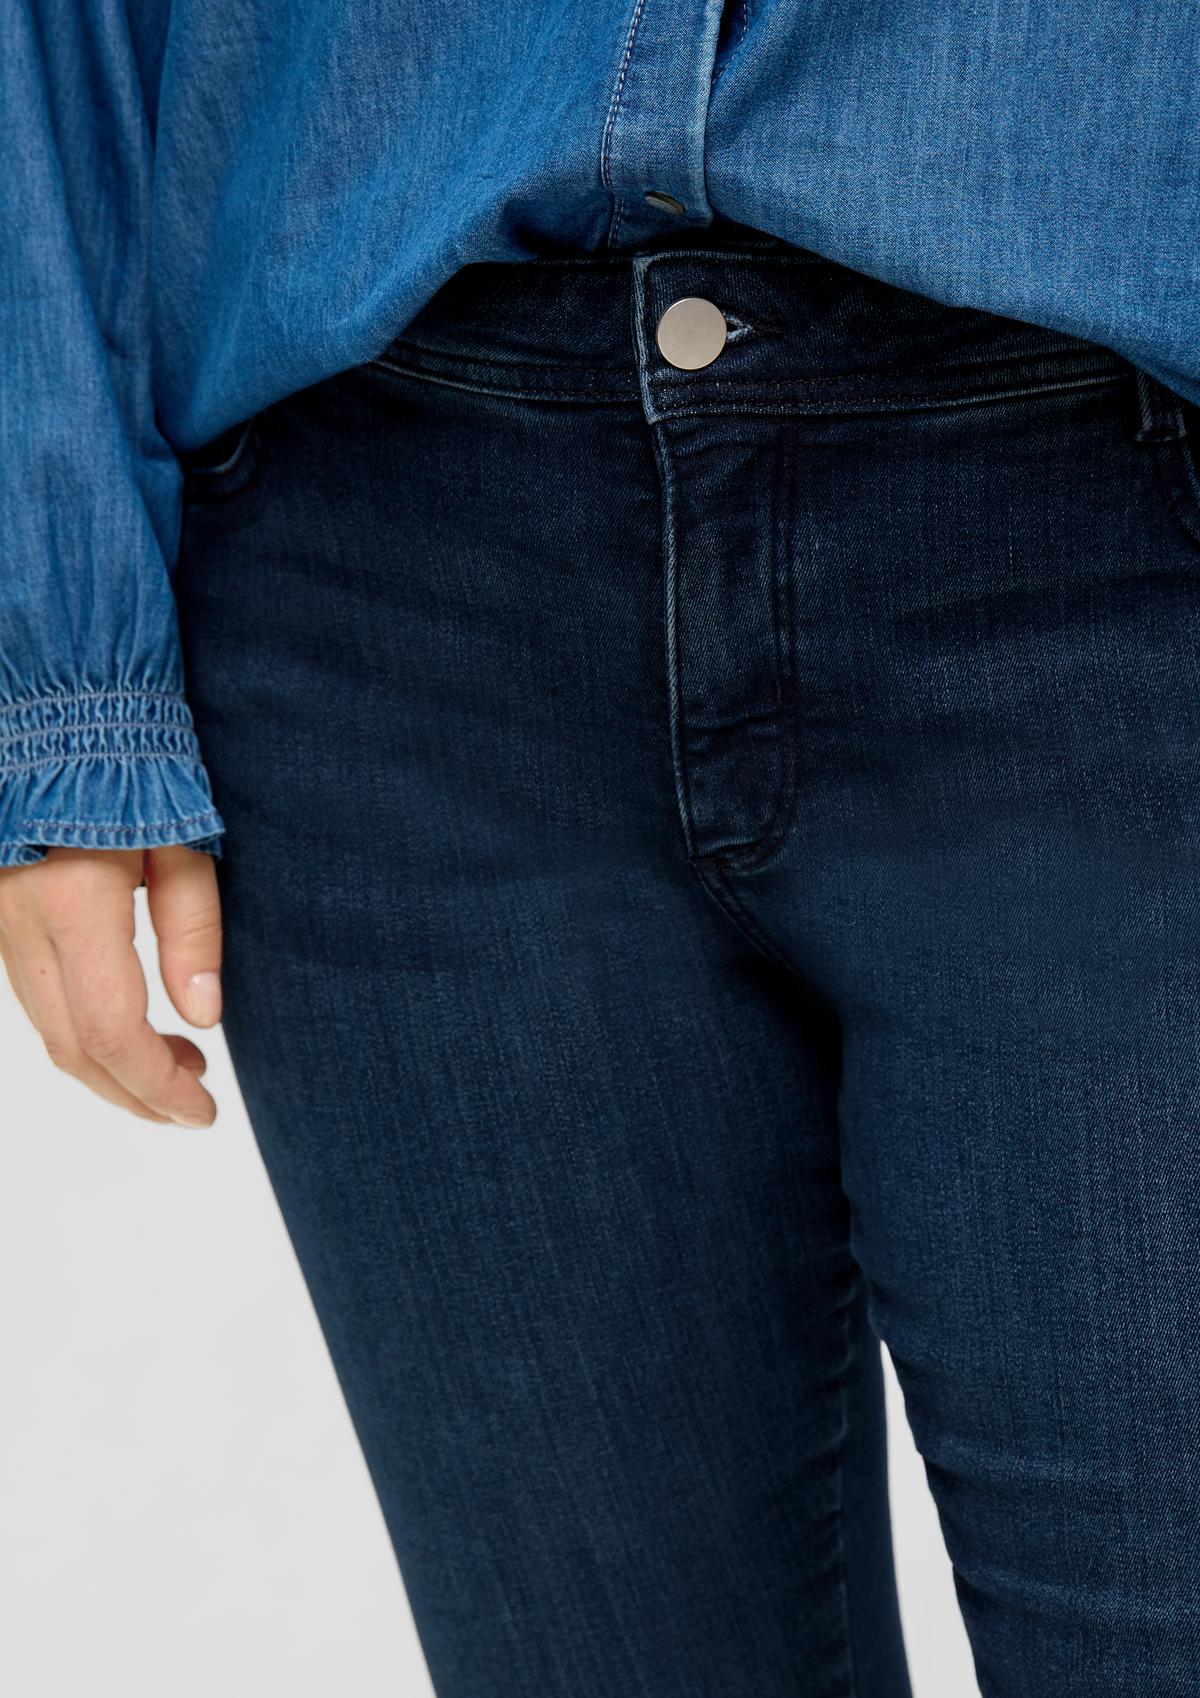 s.Oliver Jeans hlače / kroj Skinny Fit / Mid Rise / oprijete hlačnice